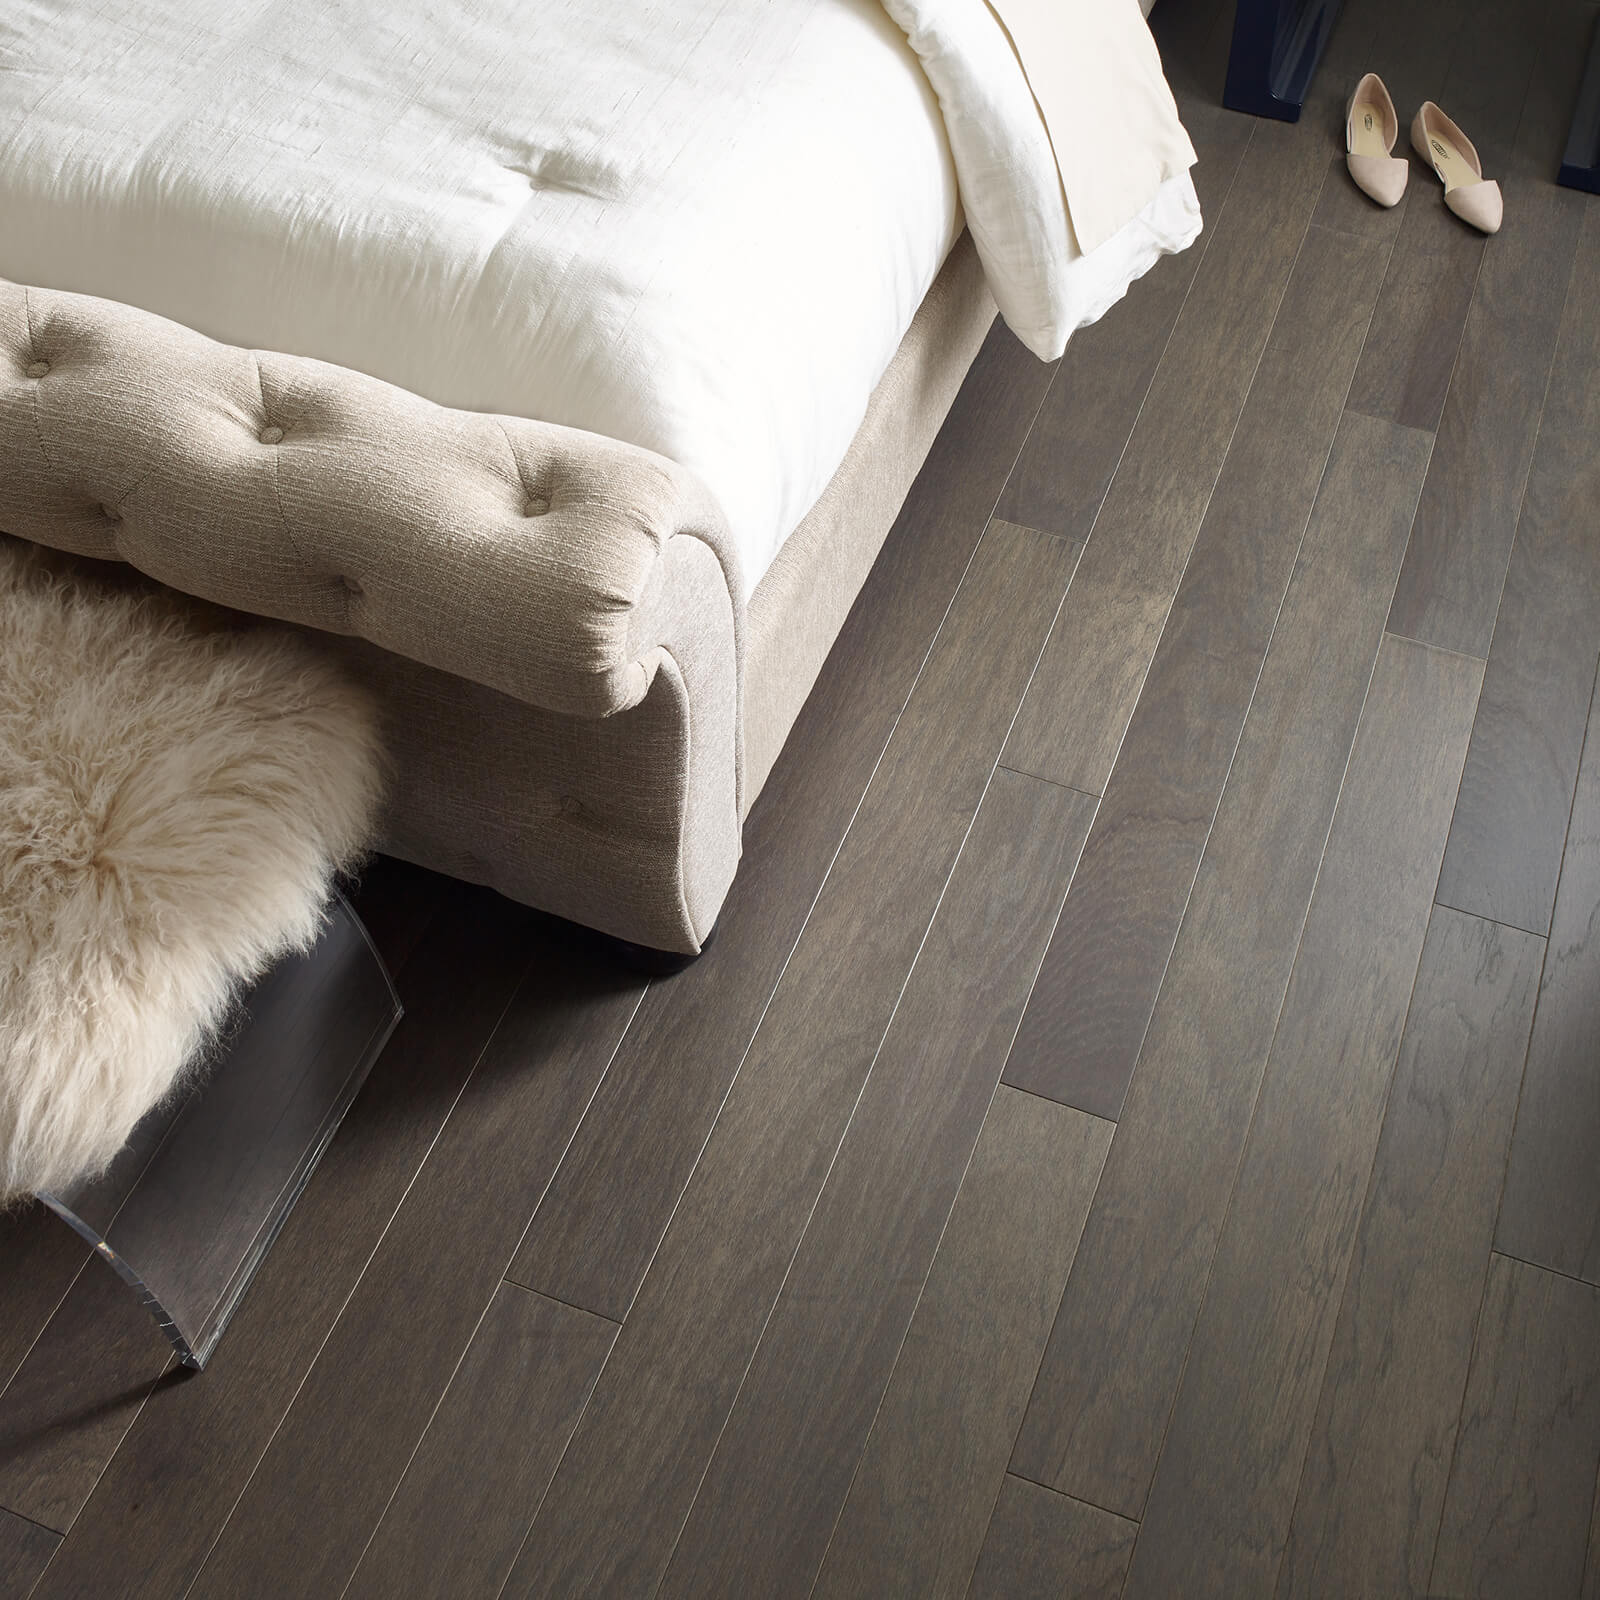 Northington smooth flooring | We'll Floor You